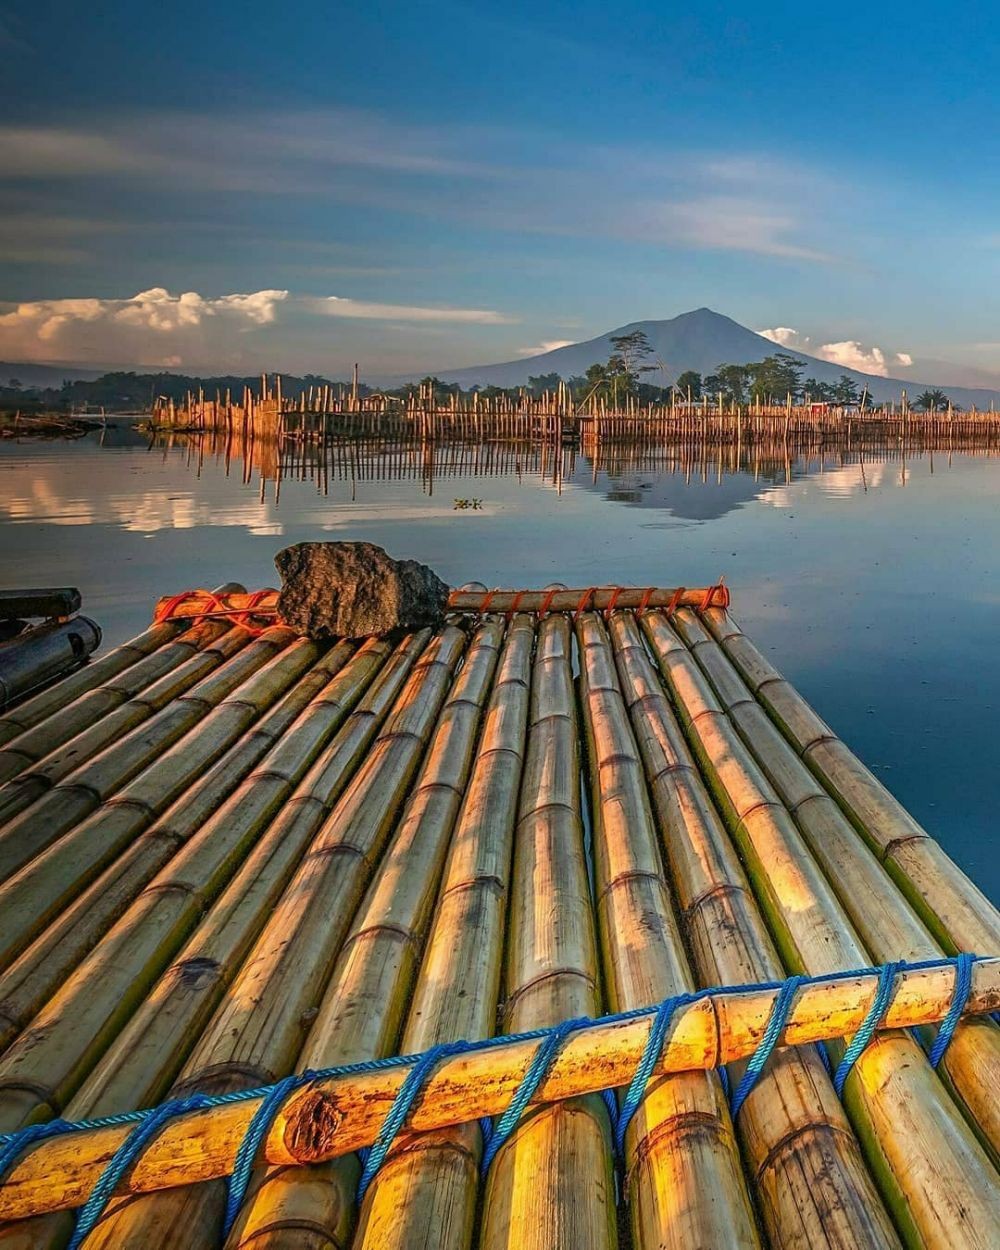 7 Wisata Danau Pulau Jawa Yang Horor dan Angker, Konon Di Huni Naga Raksasa 1.1